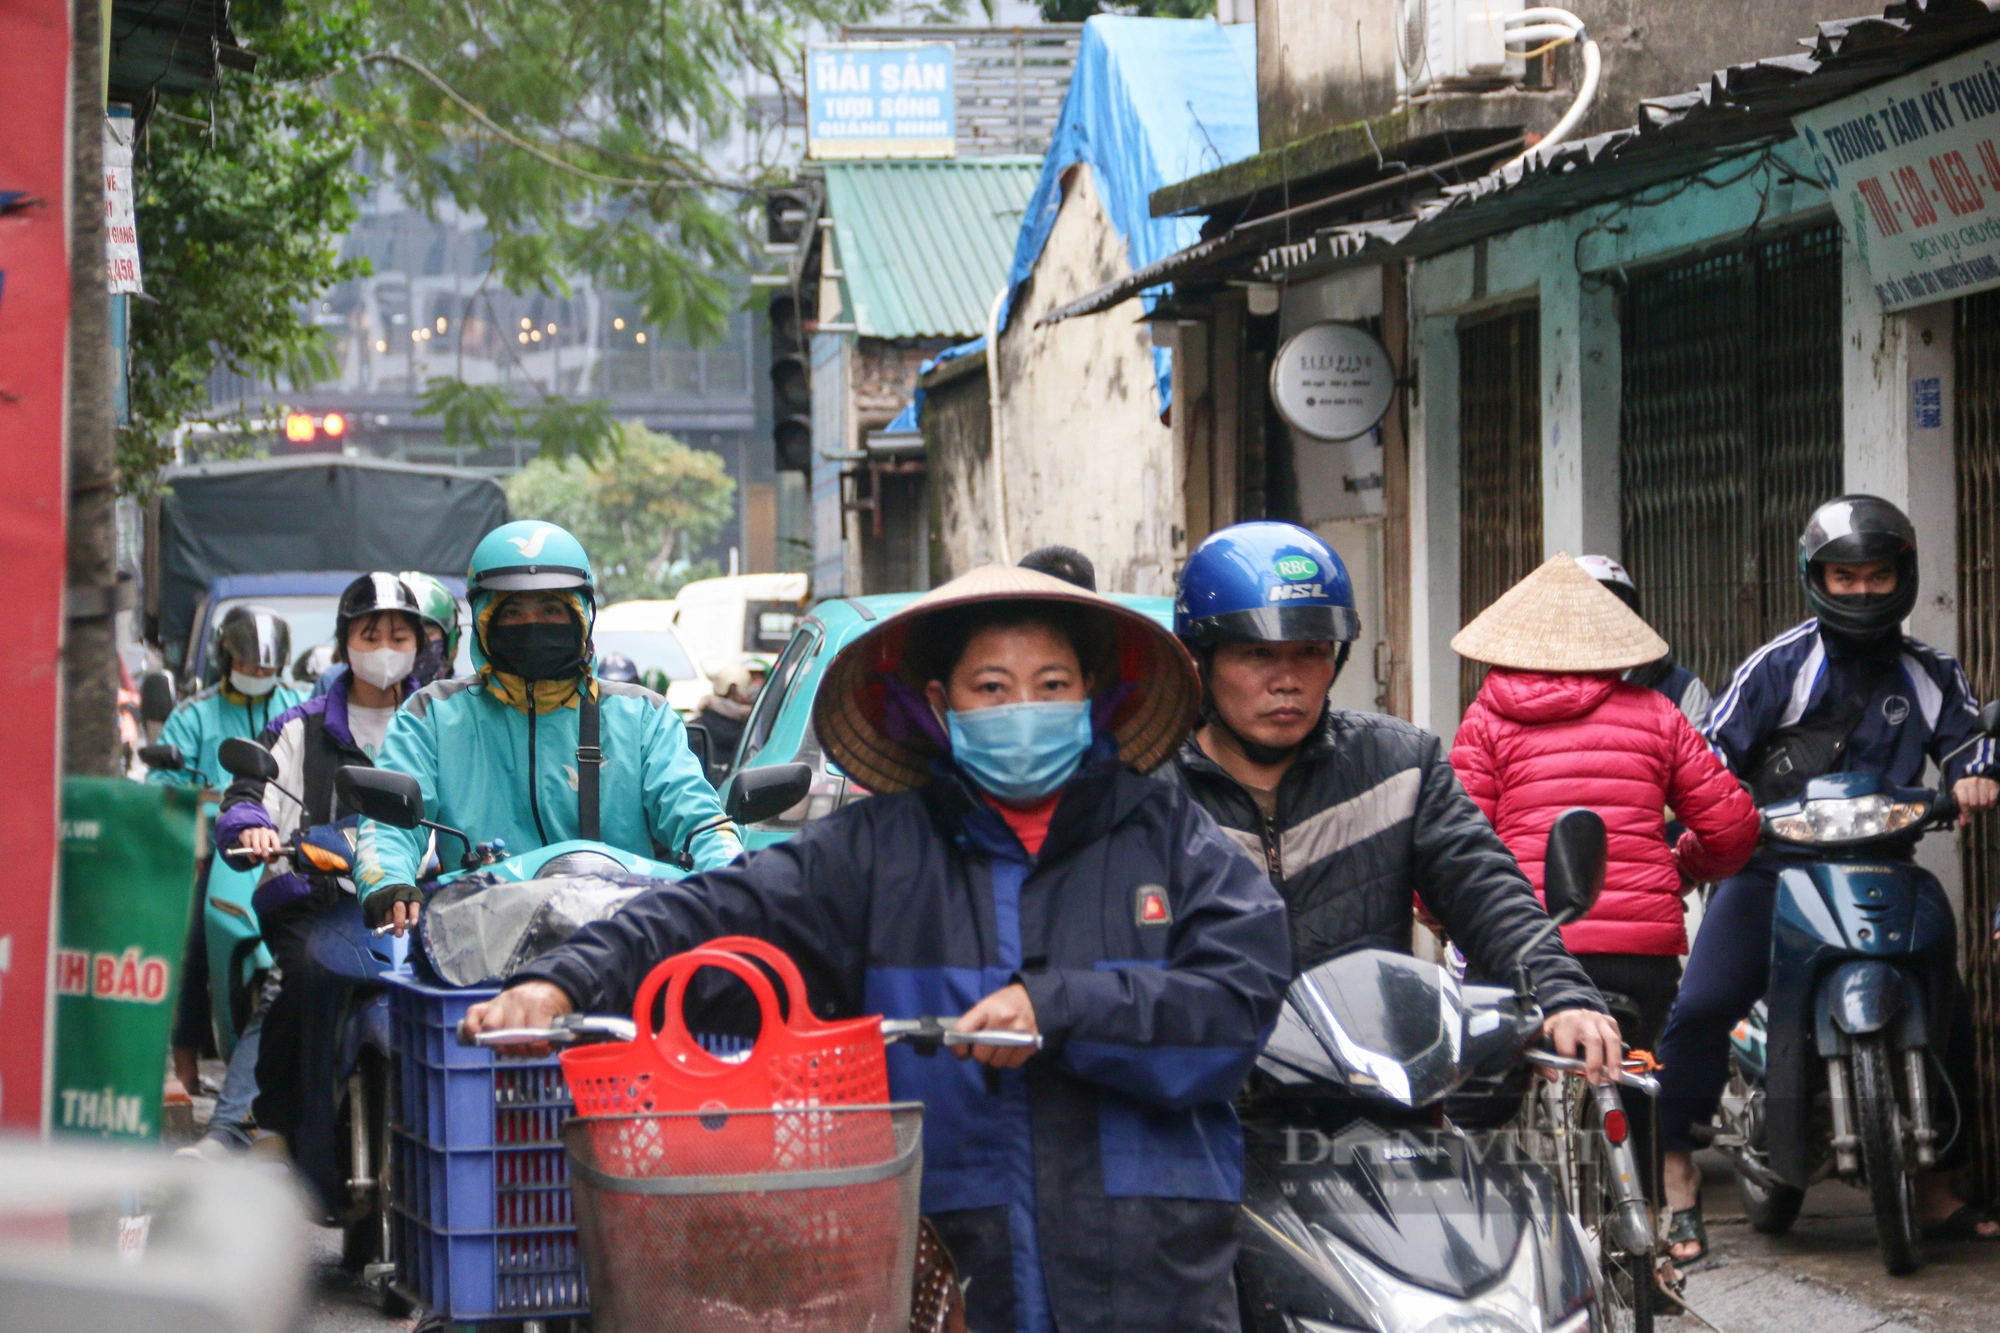 Mòn mỏi chờ dự án triển khai, người dân Hà Nội chật vật di chuyển trên con đường chi chít "ổ voi ổ gà"- Ảnh 4.